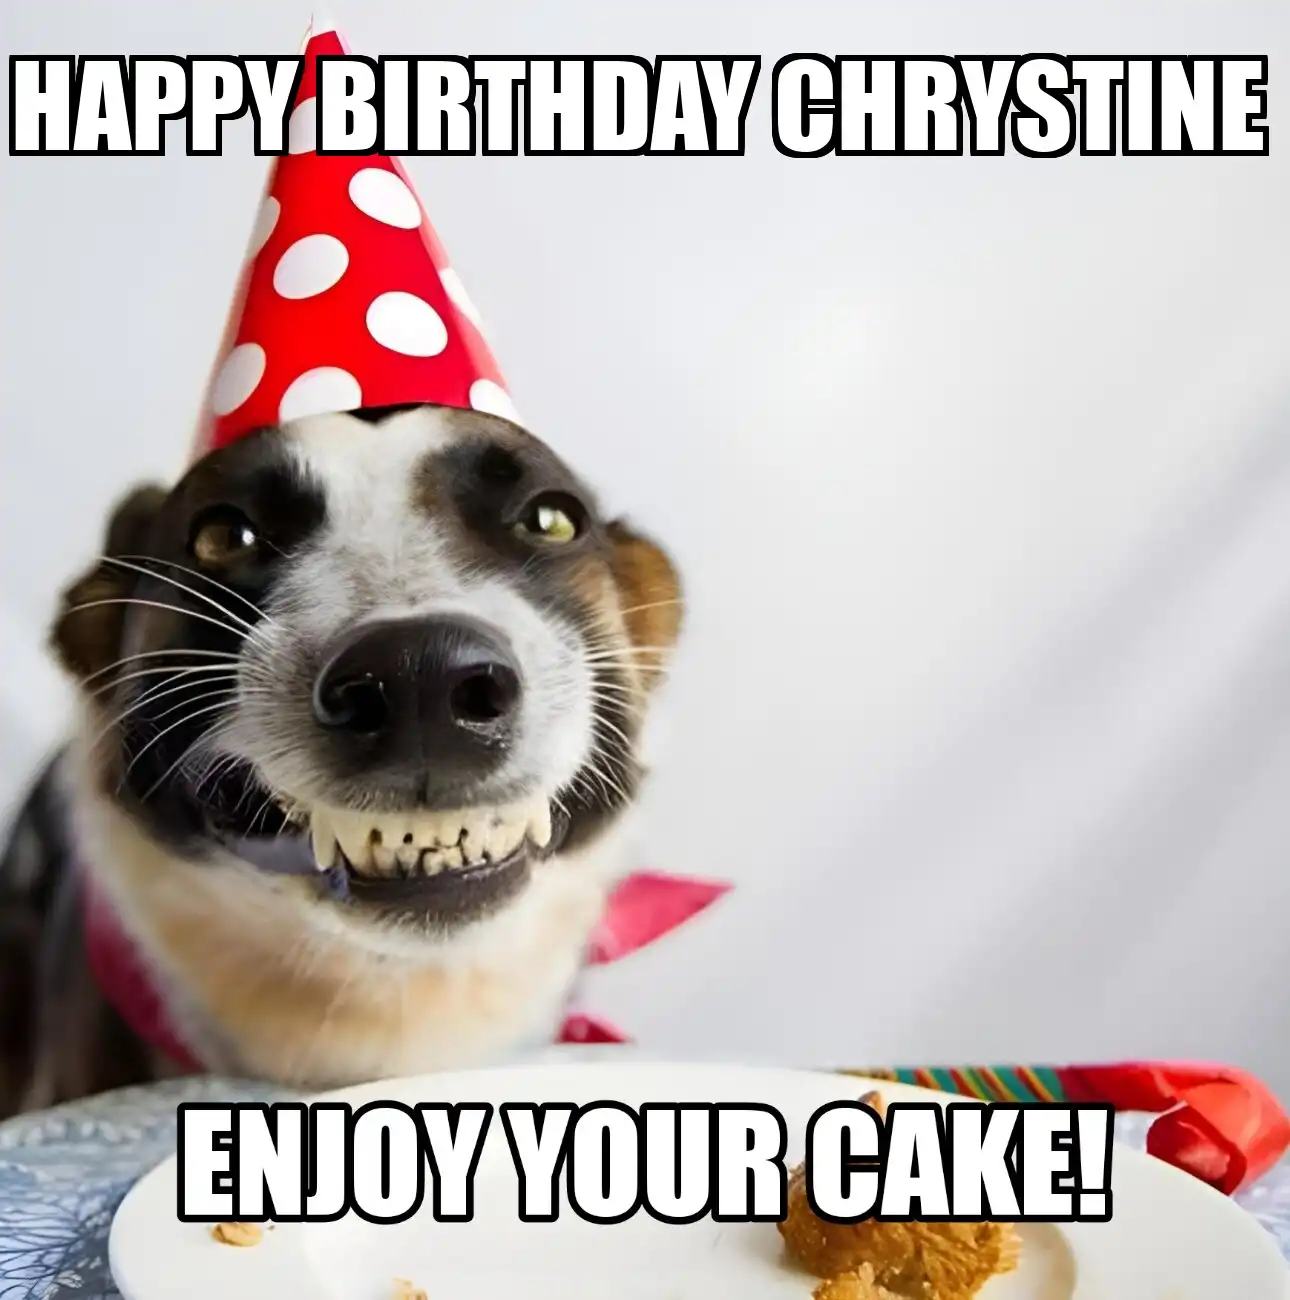 Happy Birthday Chrystine Enjoy Your Cake Dog Meme